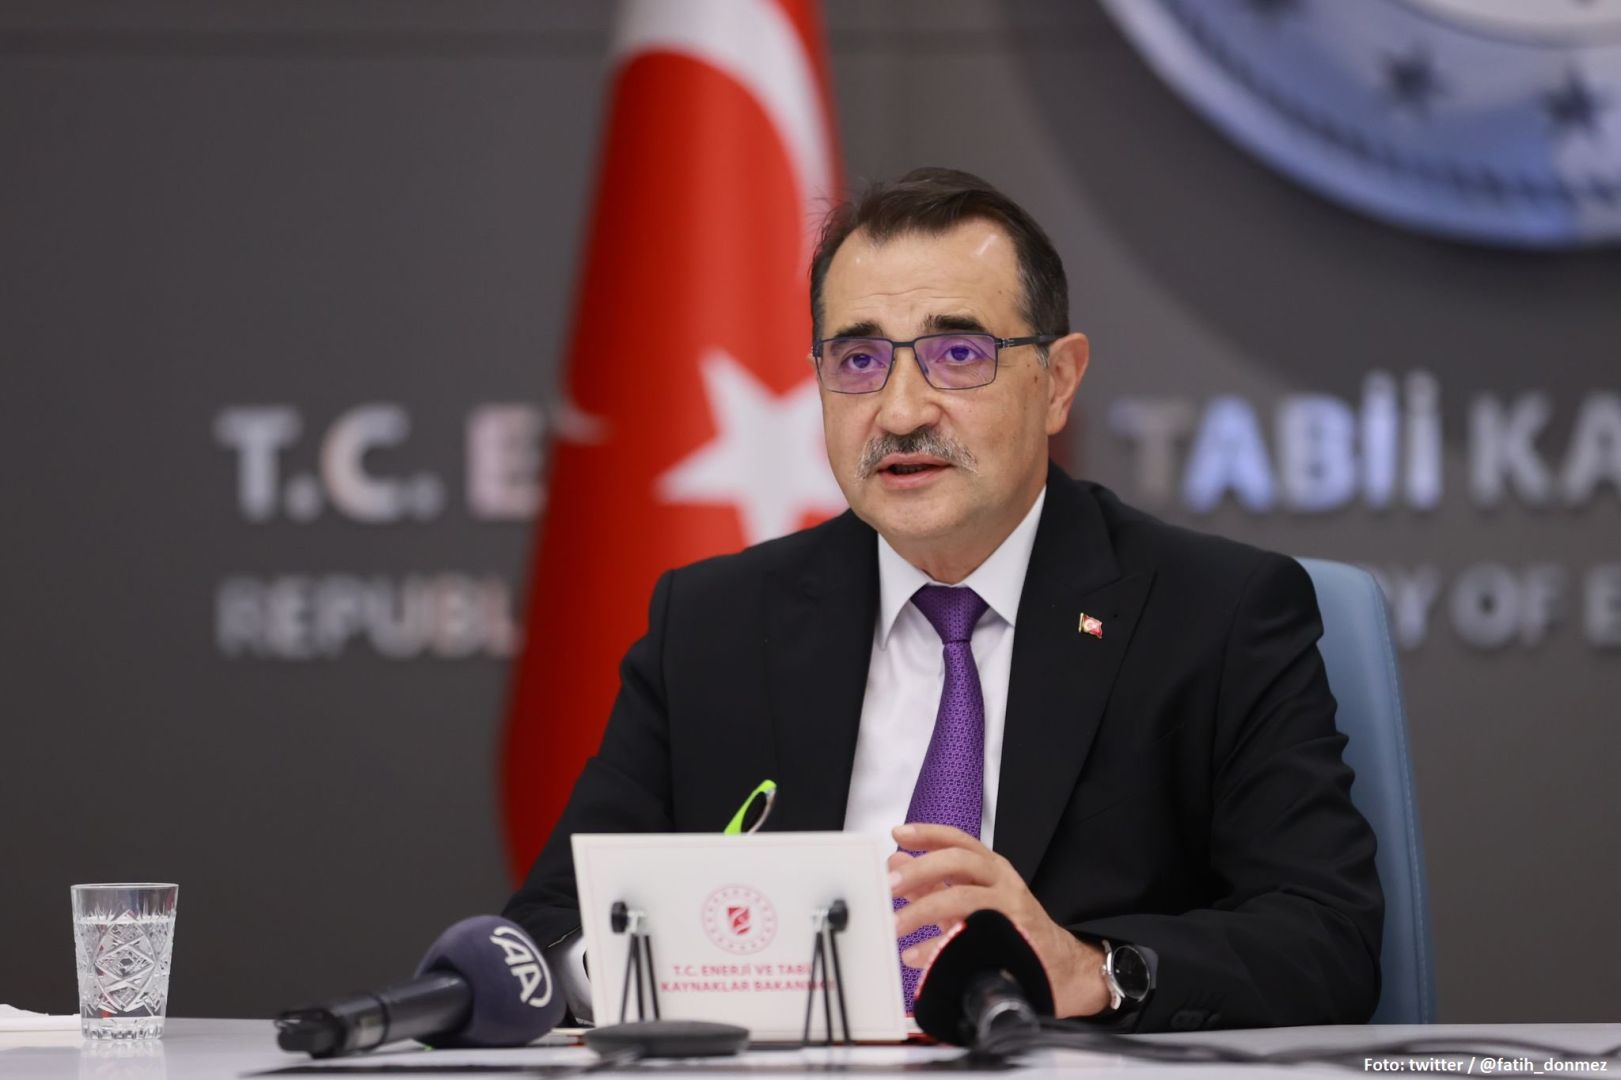 Türkiye rechnet mit Aserbaidschans Beteiligung am Gas-Hub-Projekt - Minister